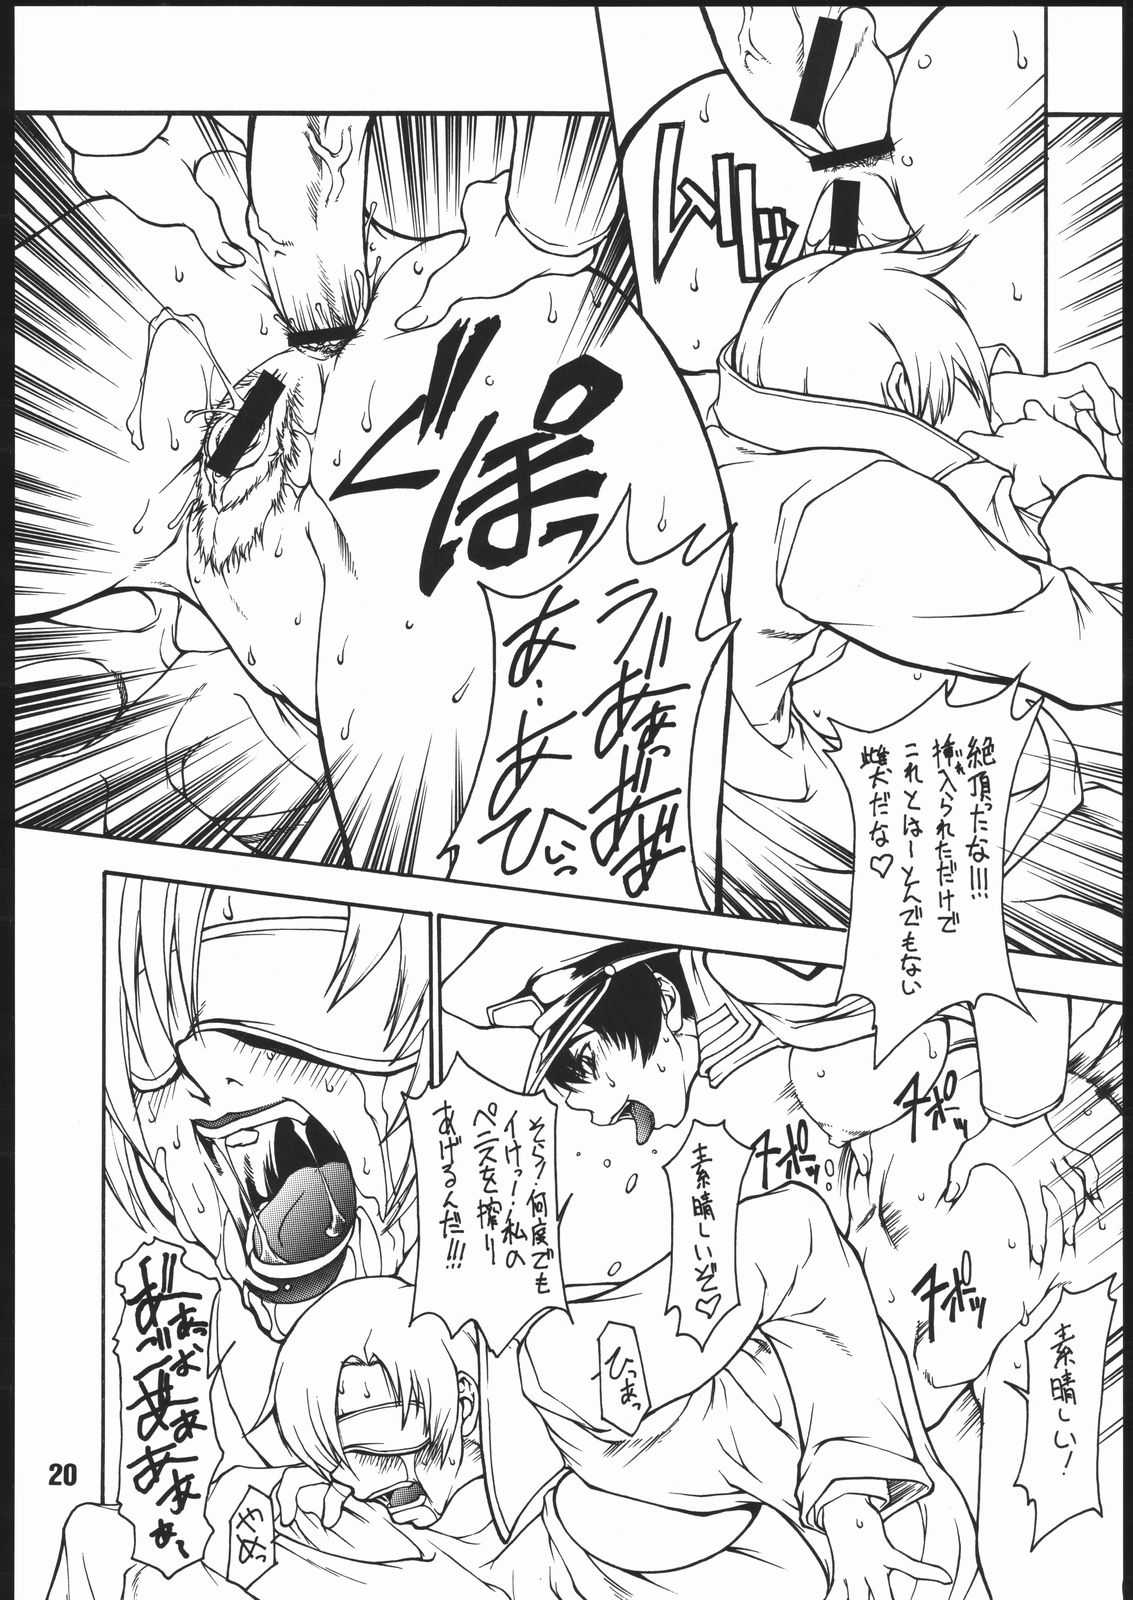 [Gundam] Dead Reckoning (Majimadou) [眞嶋堂] DEAD RECKONING